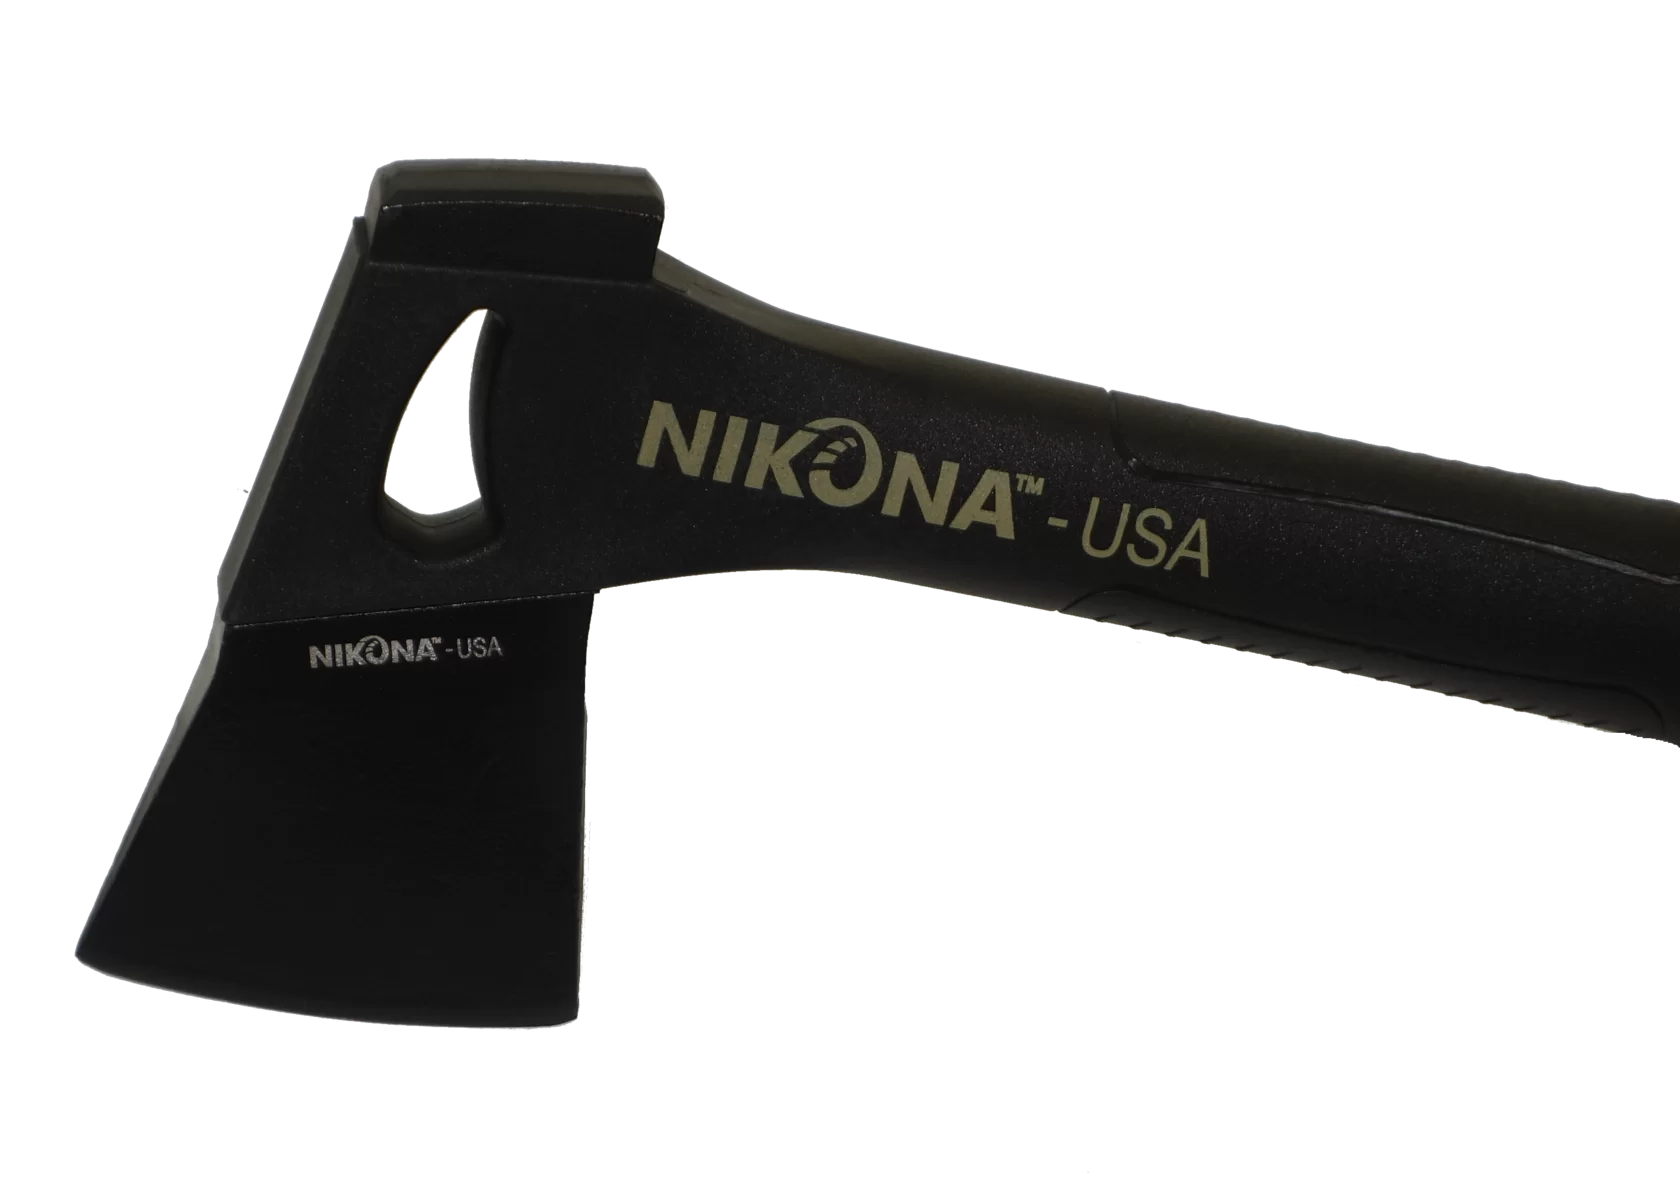 Топорик спортивный с сверхлегкой фибро-нейлоновой рукояткой Nikona 400 г чехол